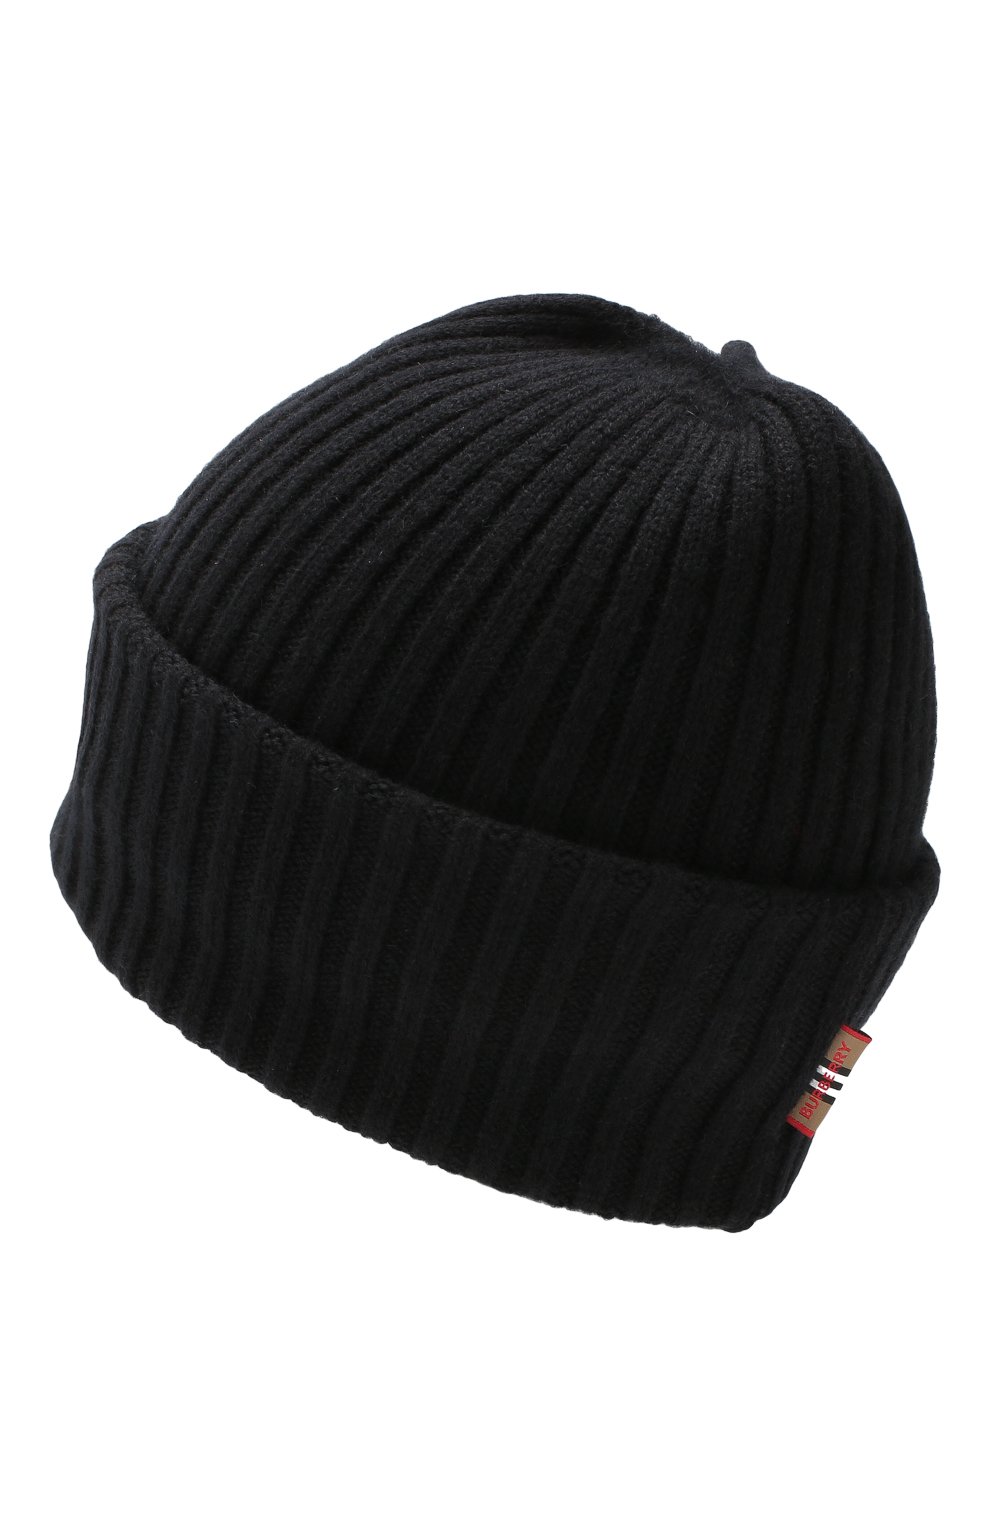 Женская кашемировая шапка BURBERRY черного цвета, арт. 8025890 | Фото 2 (Материал: Текстиль, Кашемир, Шерсть)